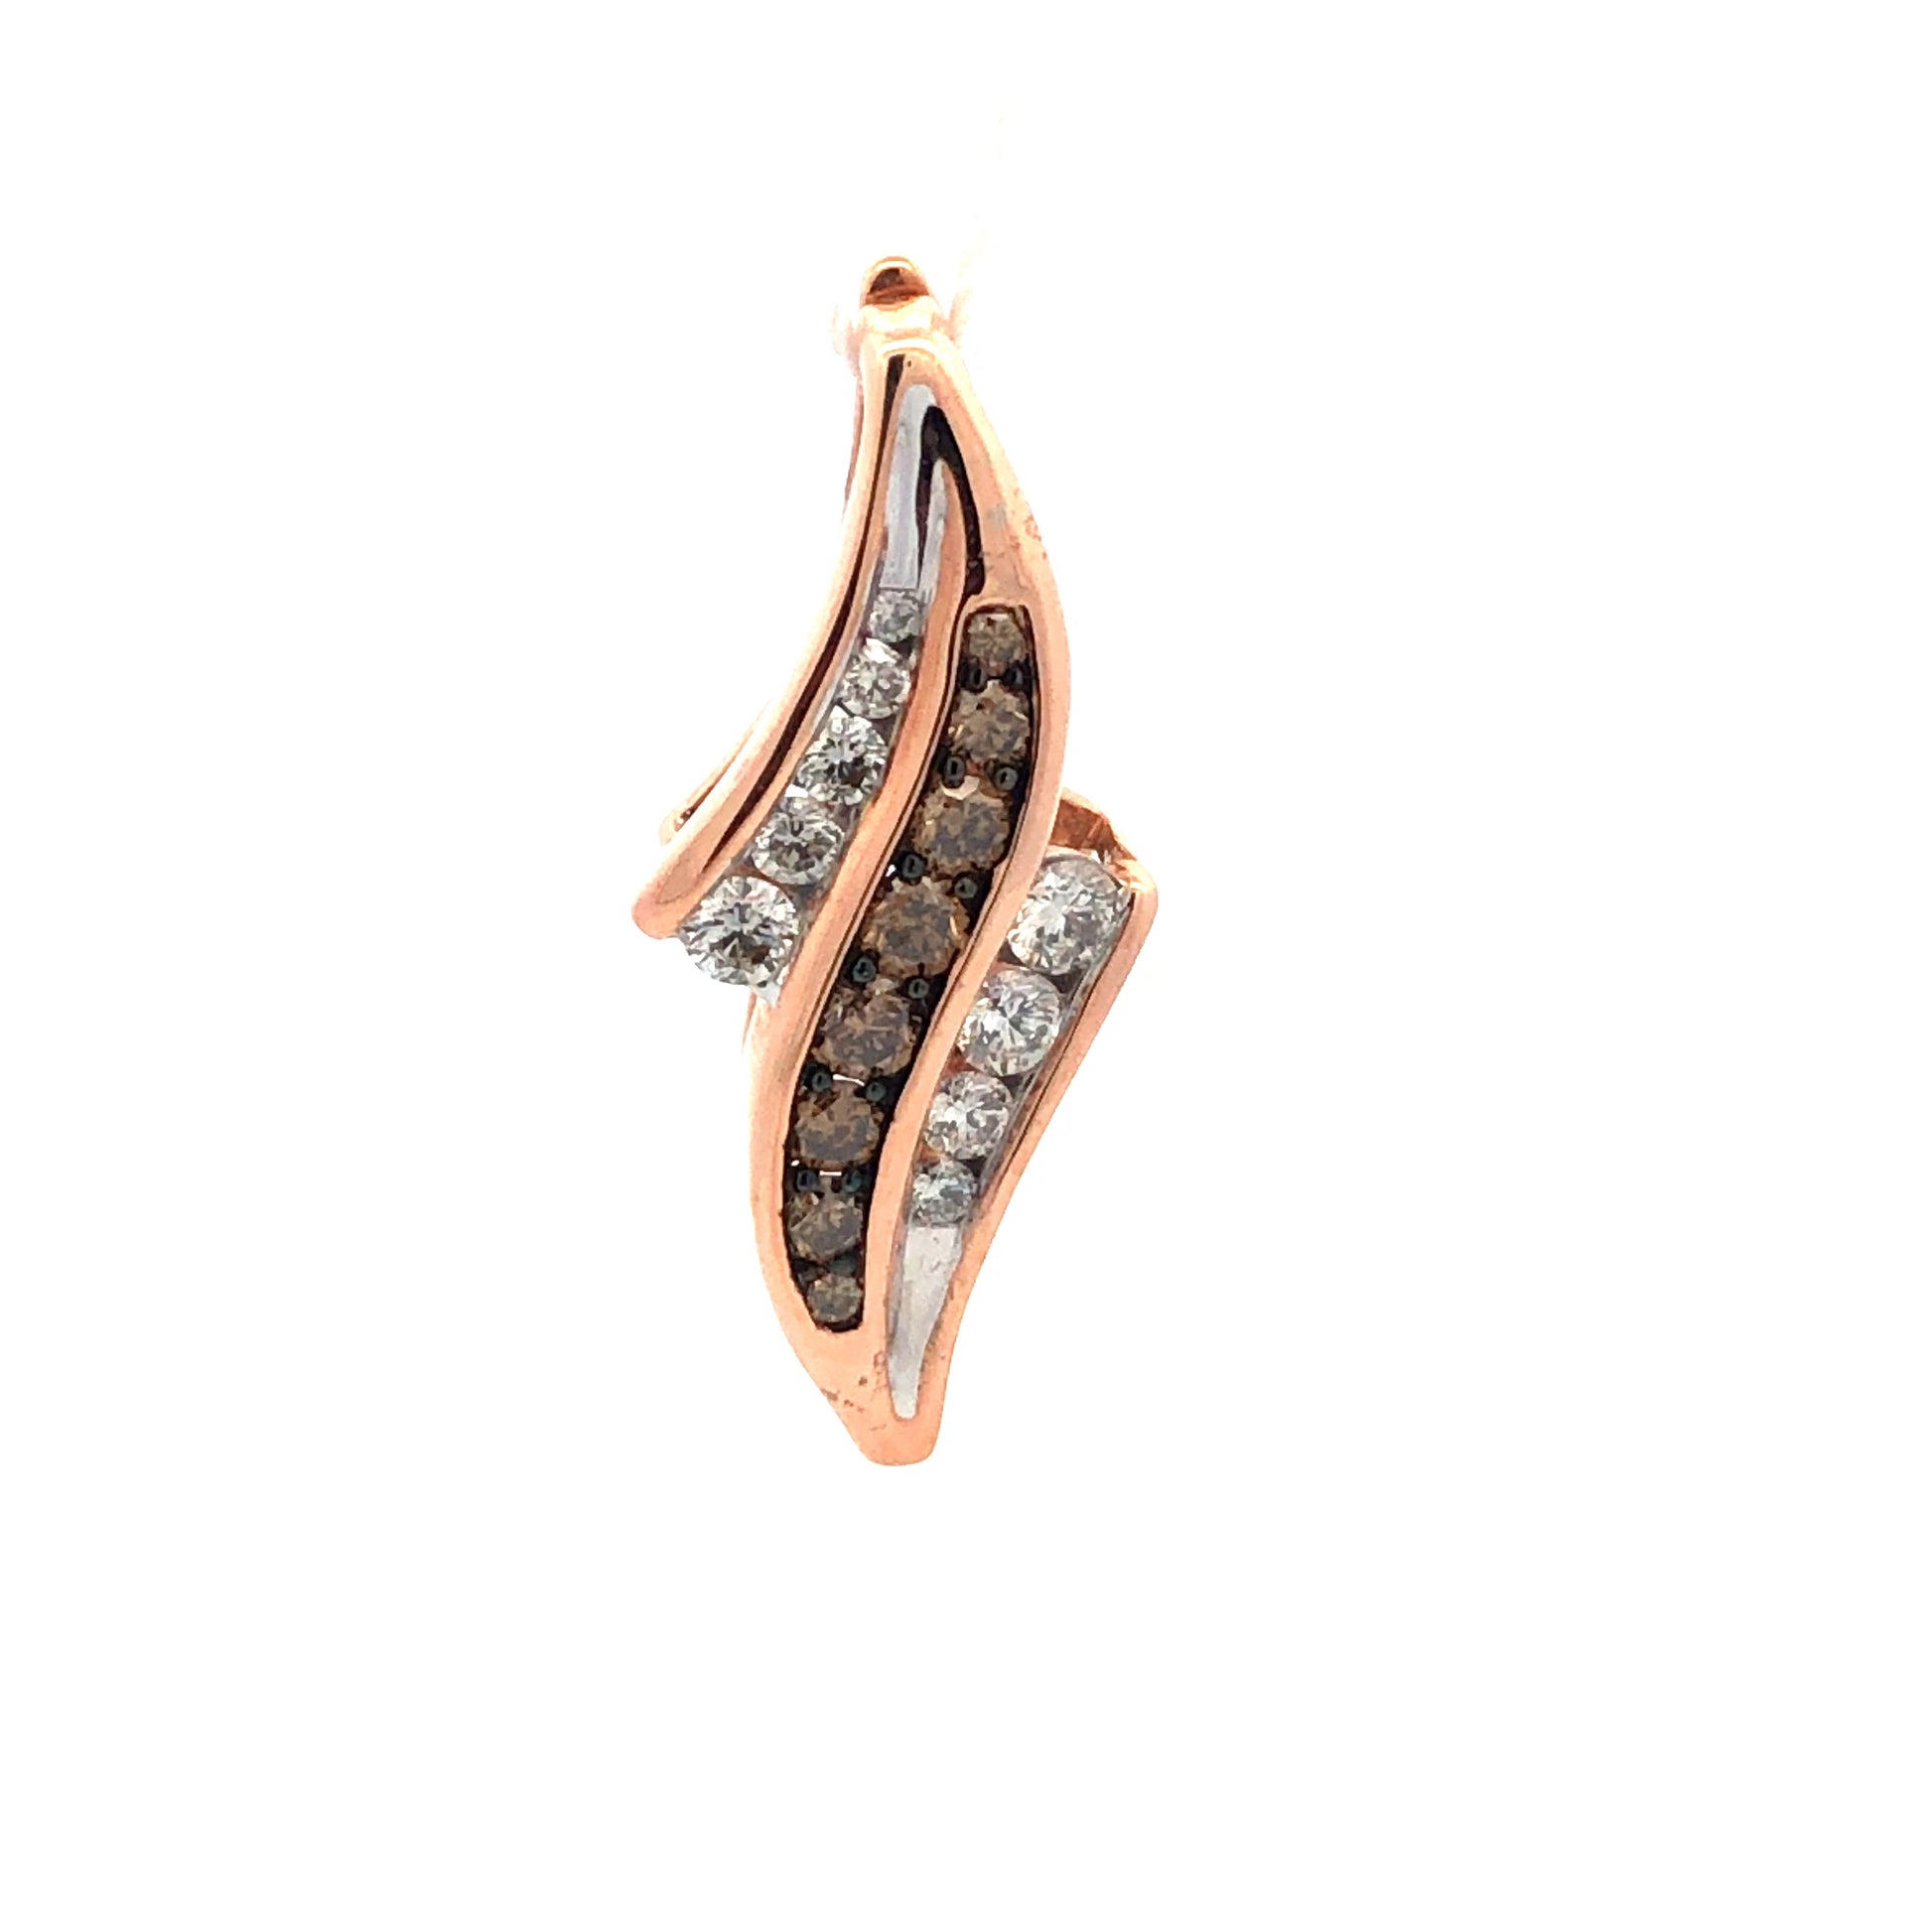 Chocolate Diamond Pendant  P11845 - Royal Gems and Jewelry